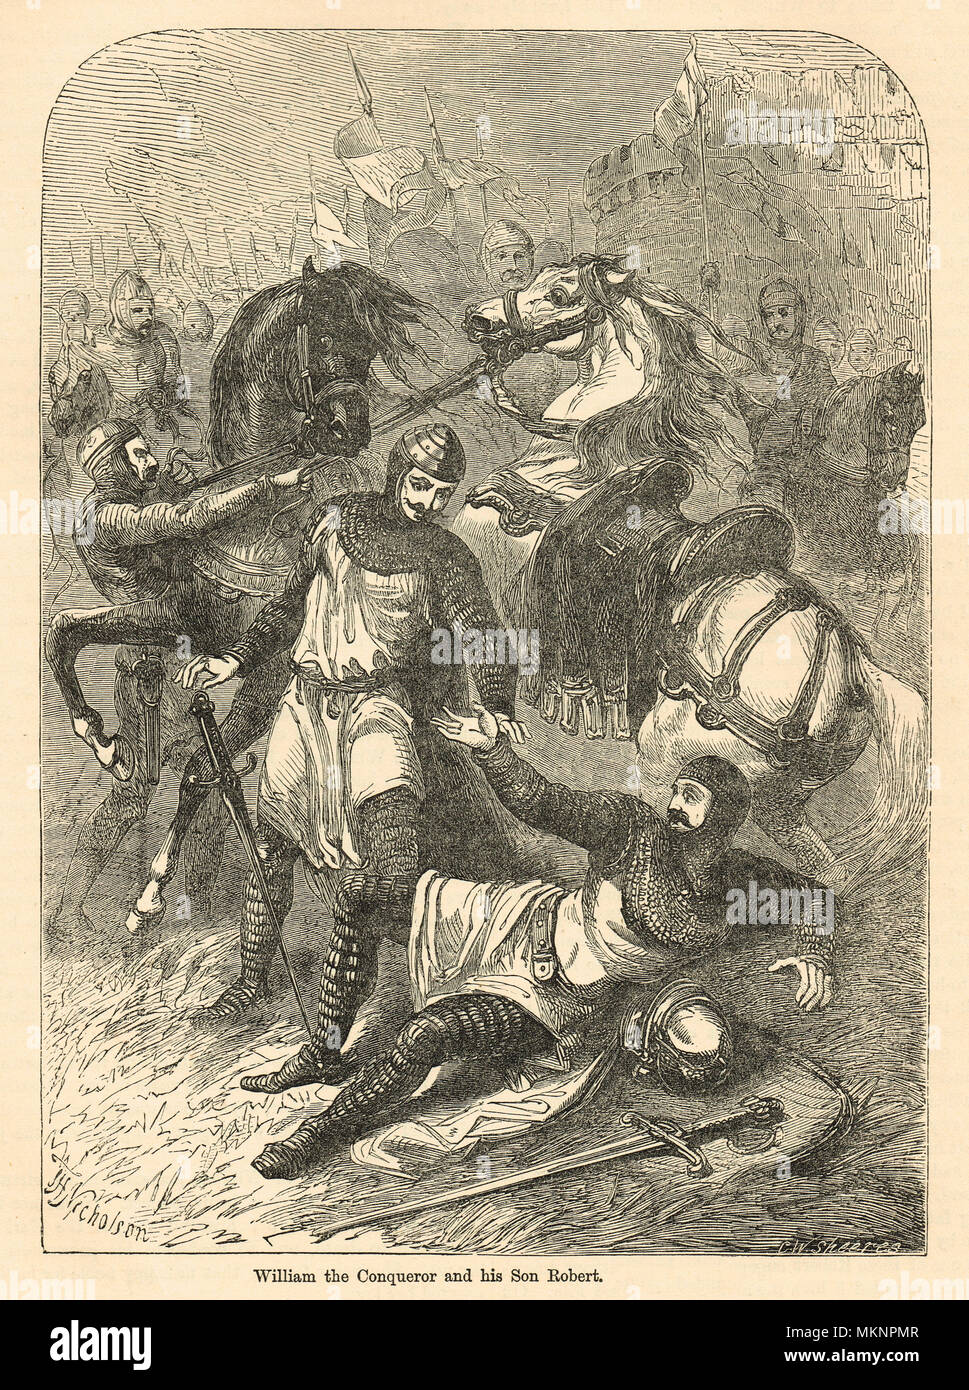 Robert Curthose le fils de Guillaume le Conquérant pour lui demander pardon, pour autant bouleverser et blessant son père William J dans la bataille, 1079 Banque D'Images